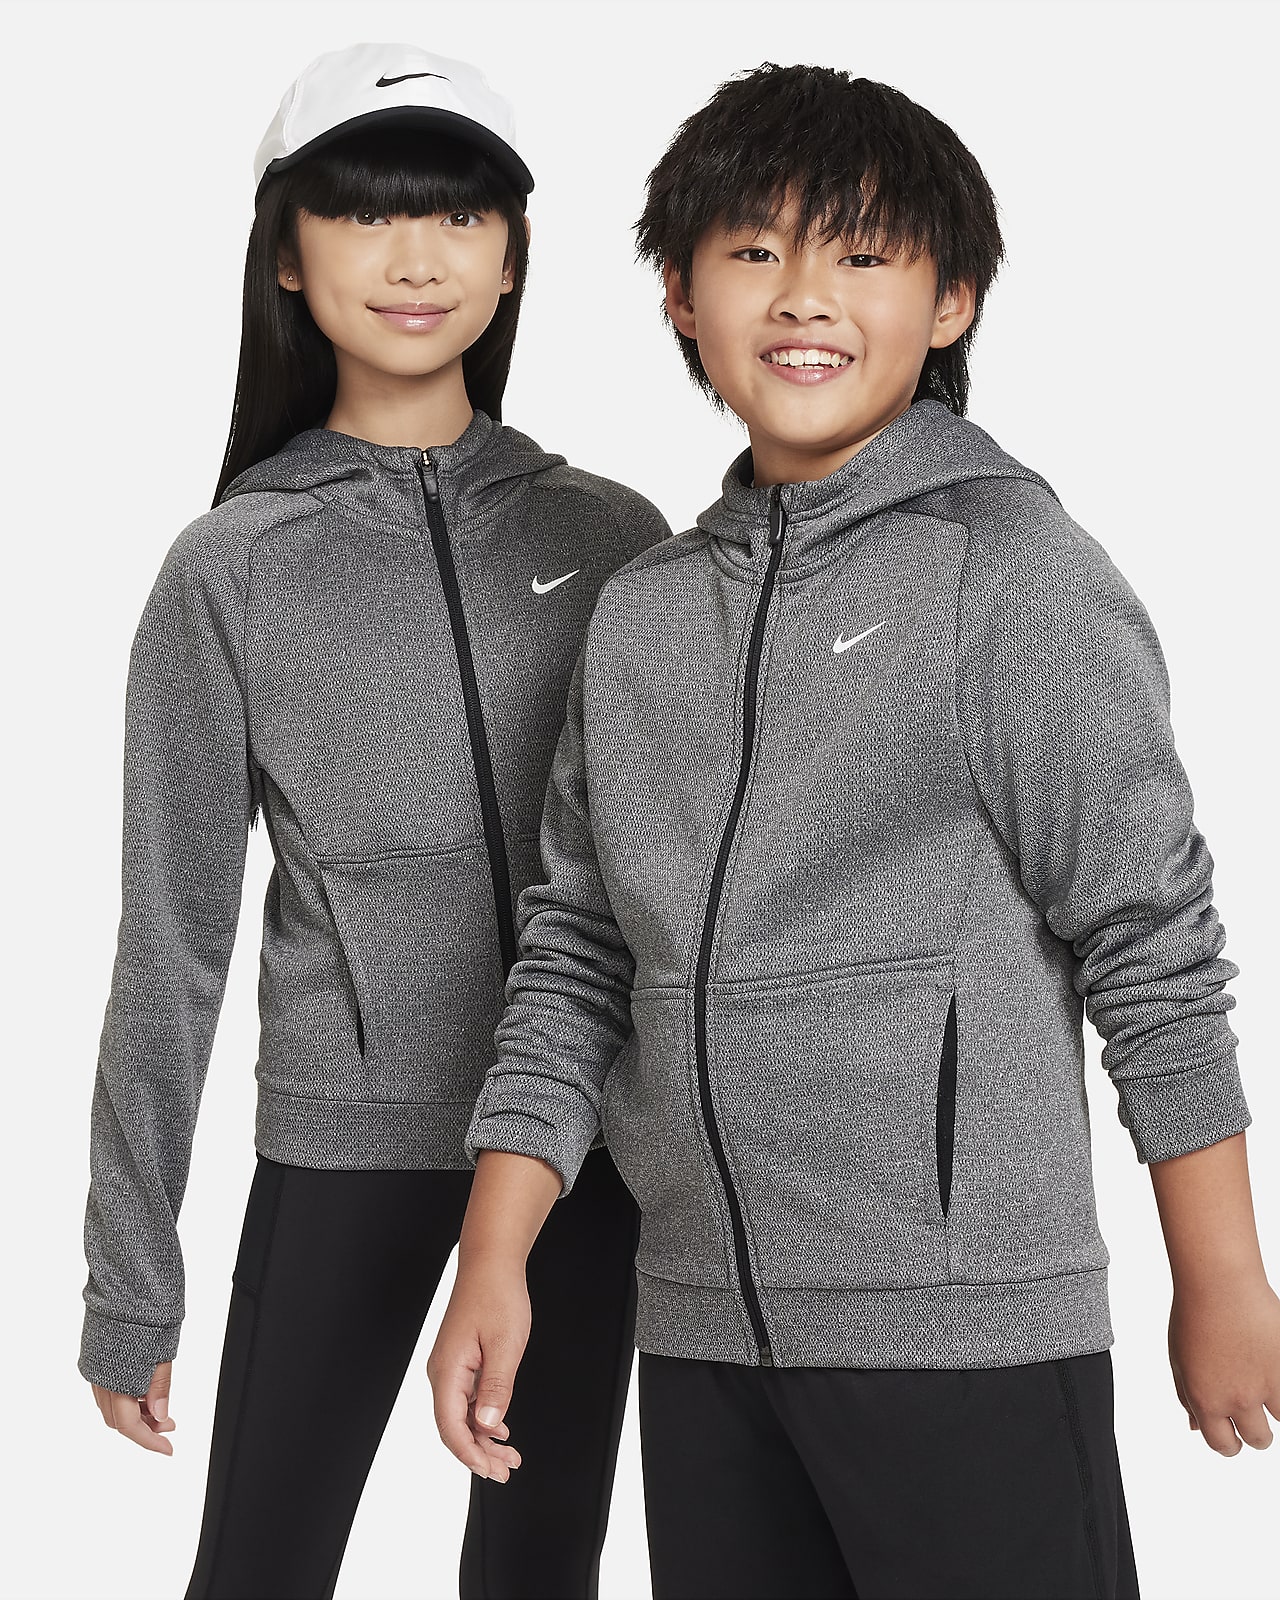 Nike Therma-FIT Sudadera con capucha y cremallera completa - Niño/a